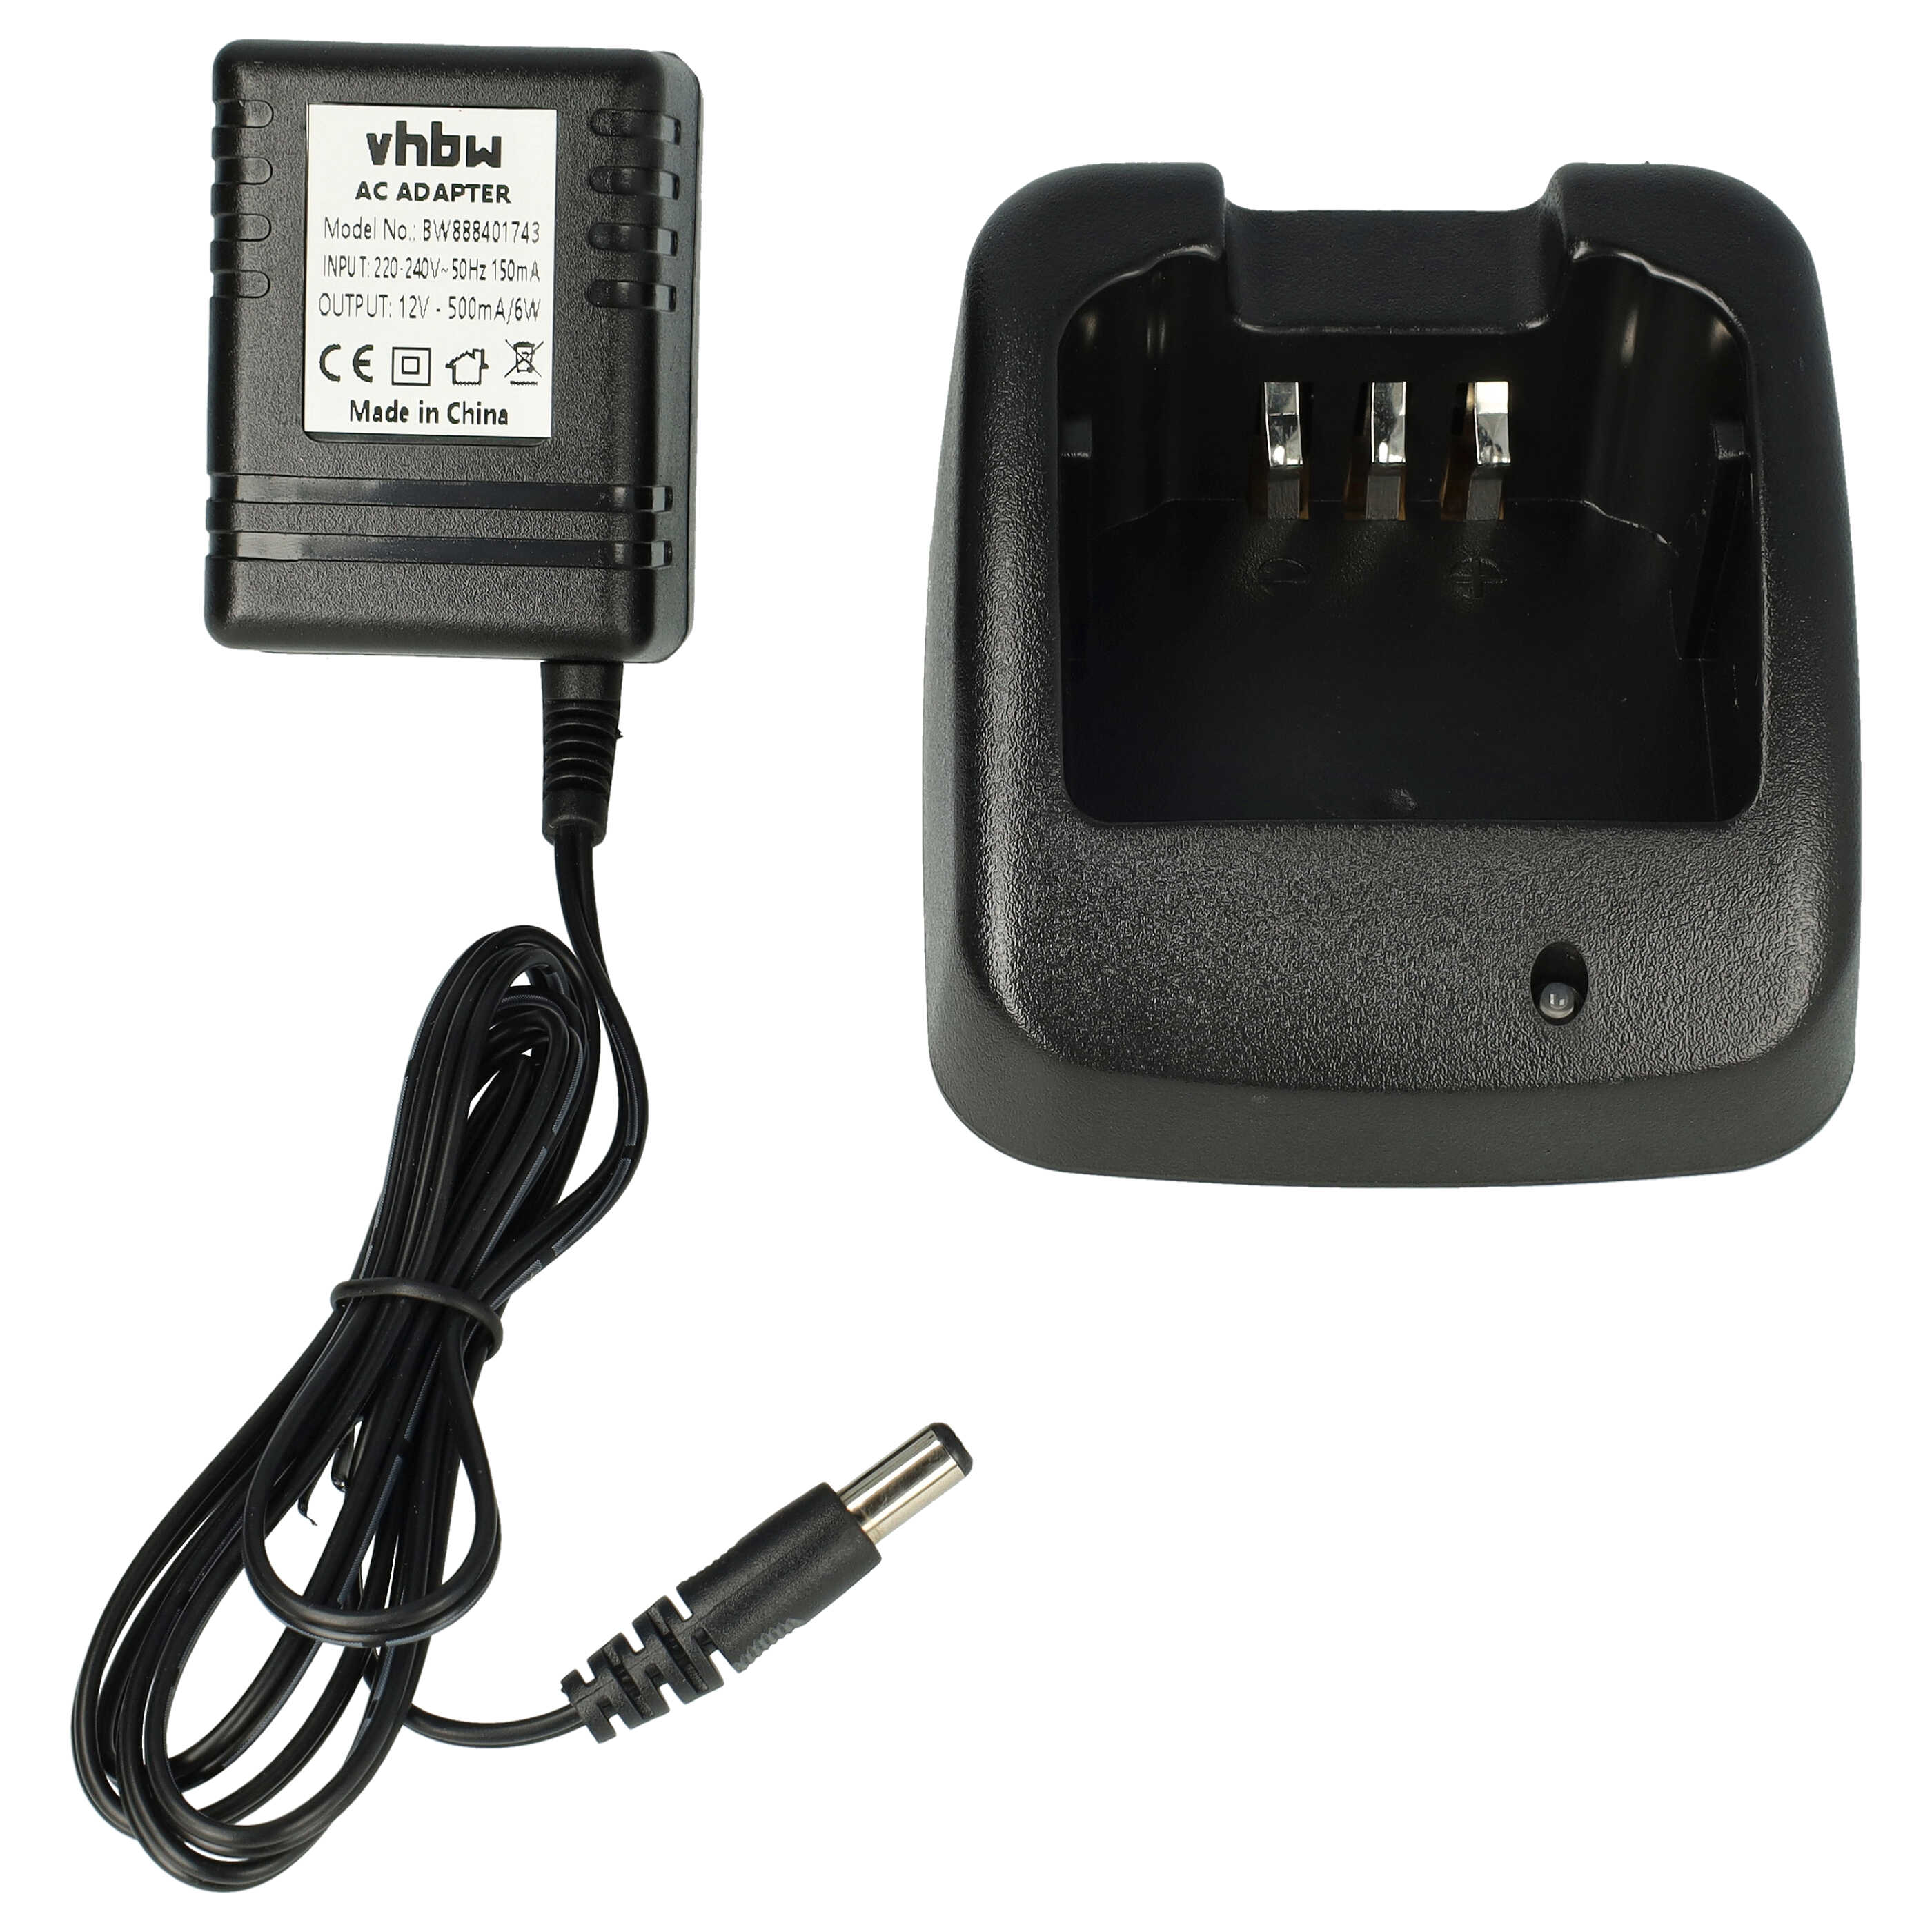 Chargeur pour batterie de radio Icom IC-F3031S - 12 V, 0,5 A